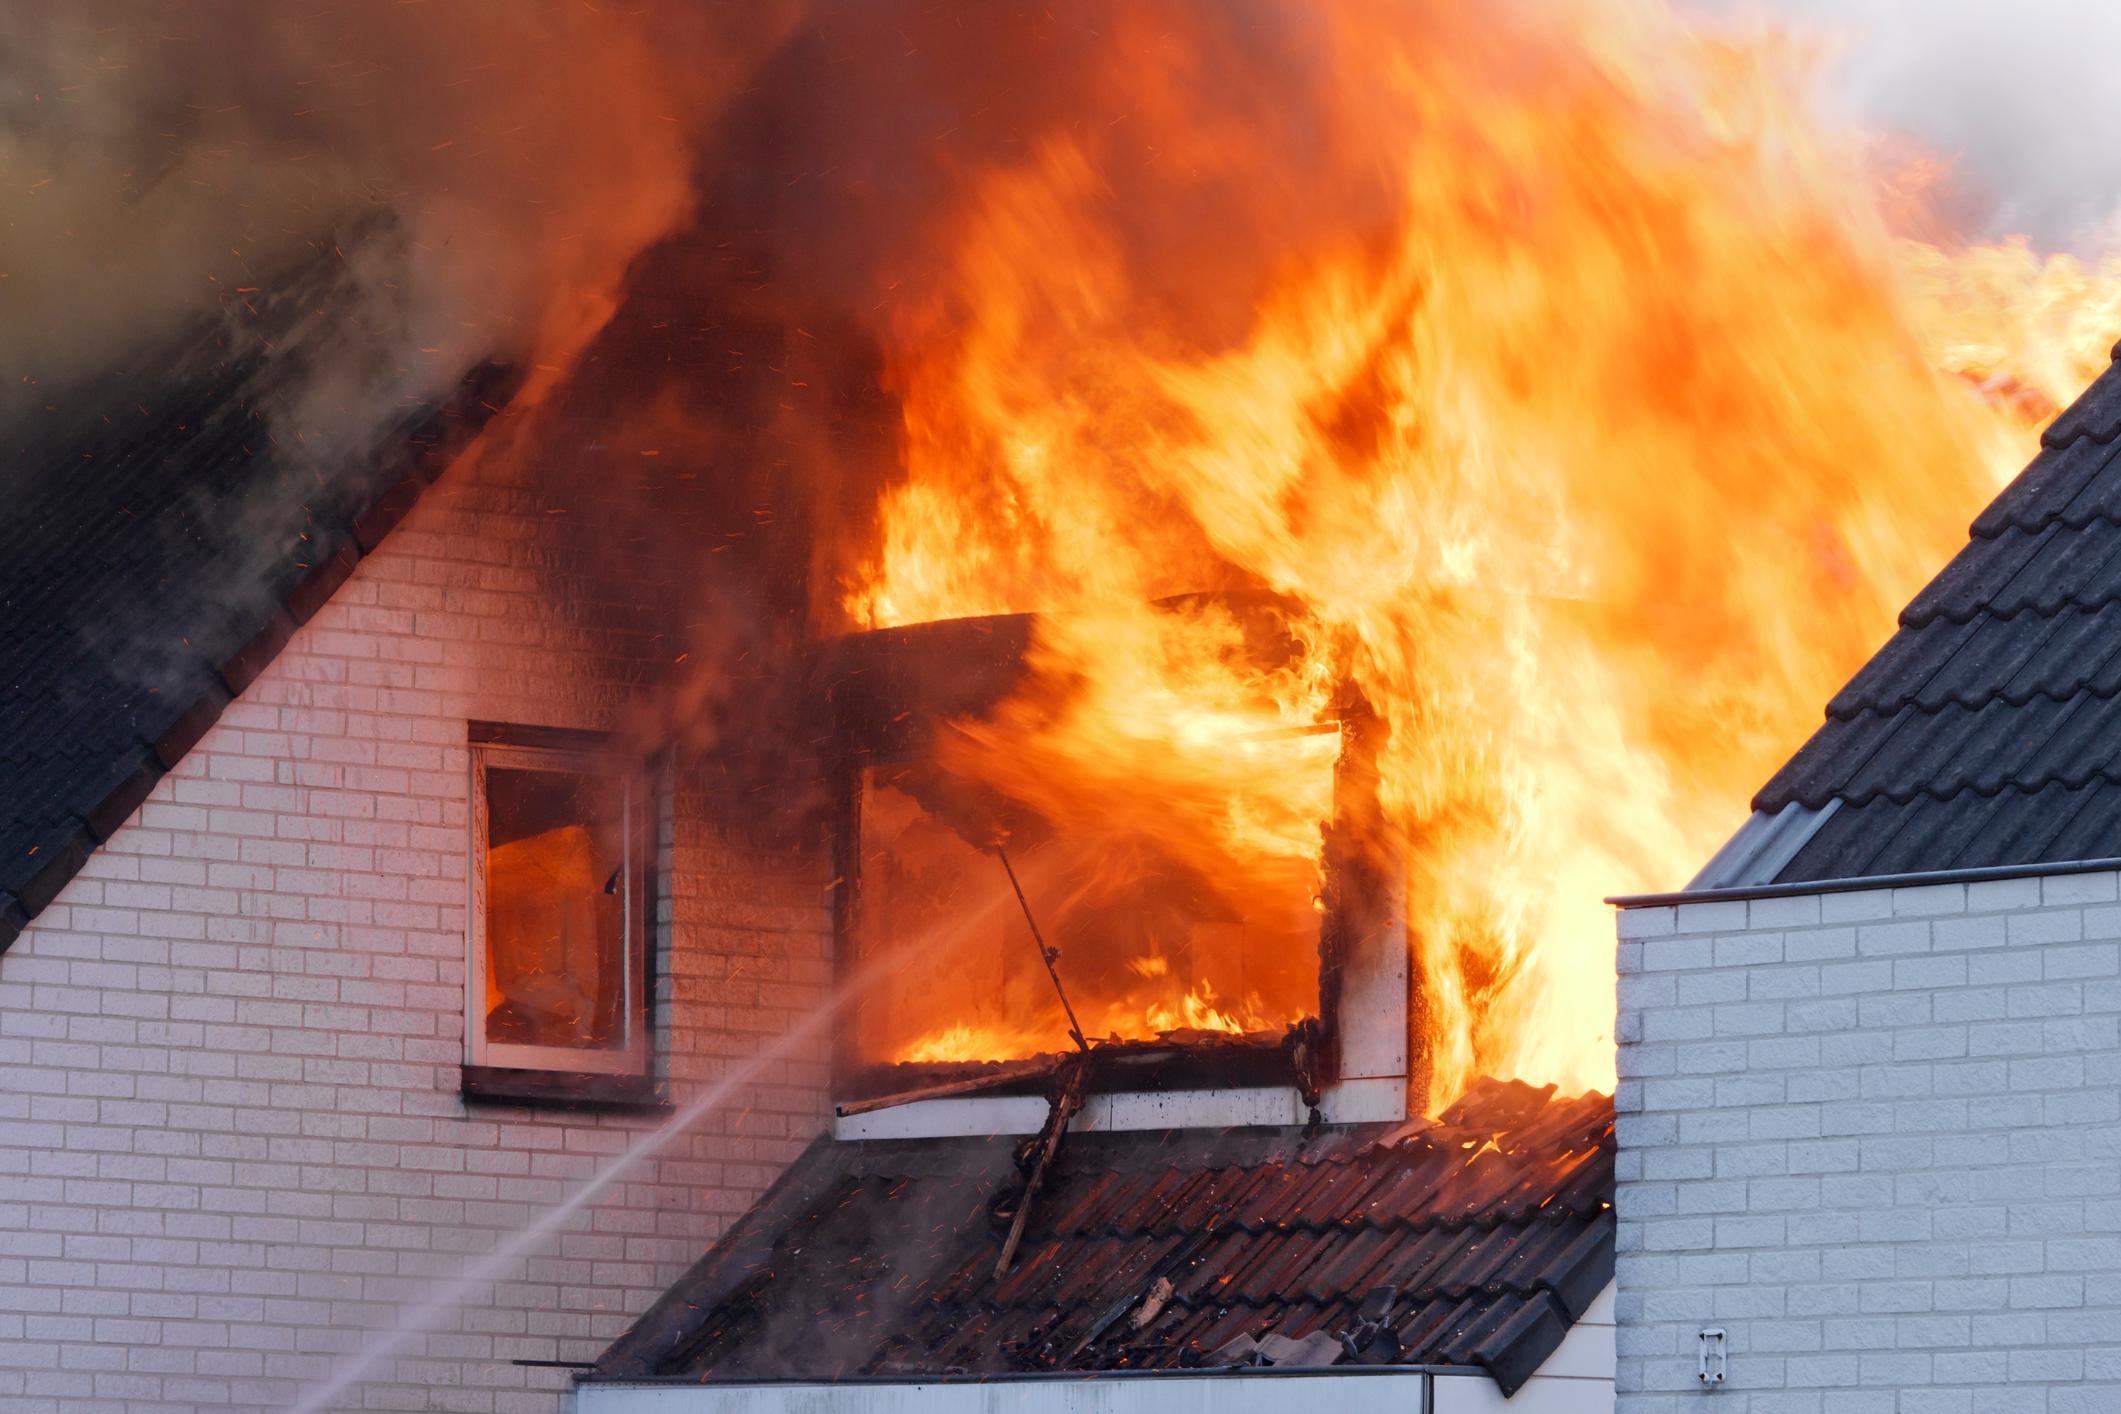  Bei jedem zweiten Brandfall ist ein Wohnhaus betroffen.